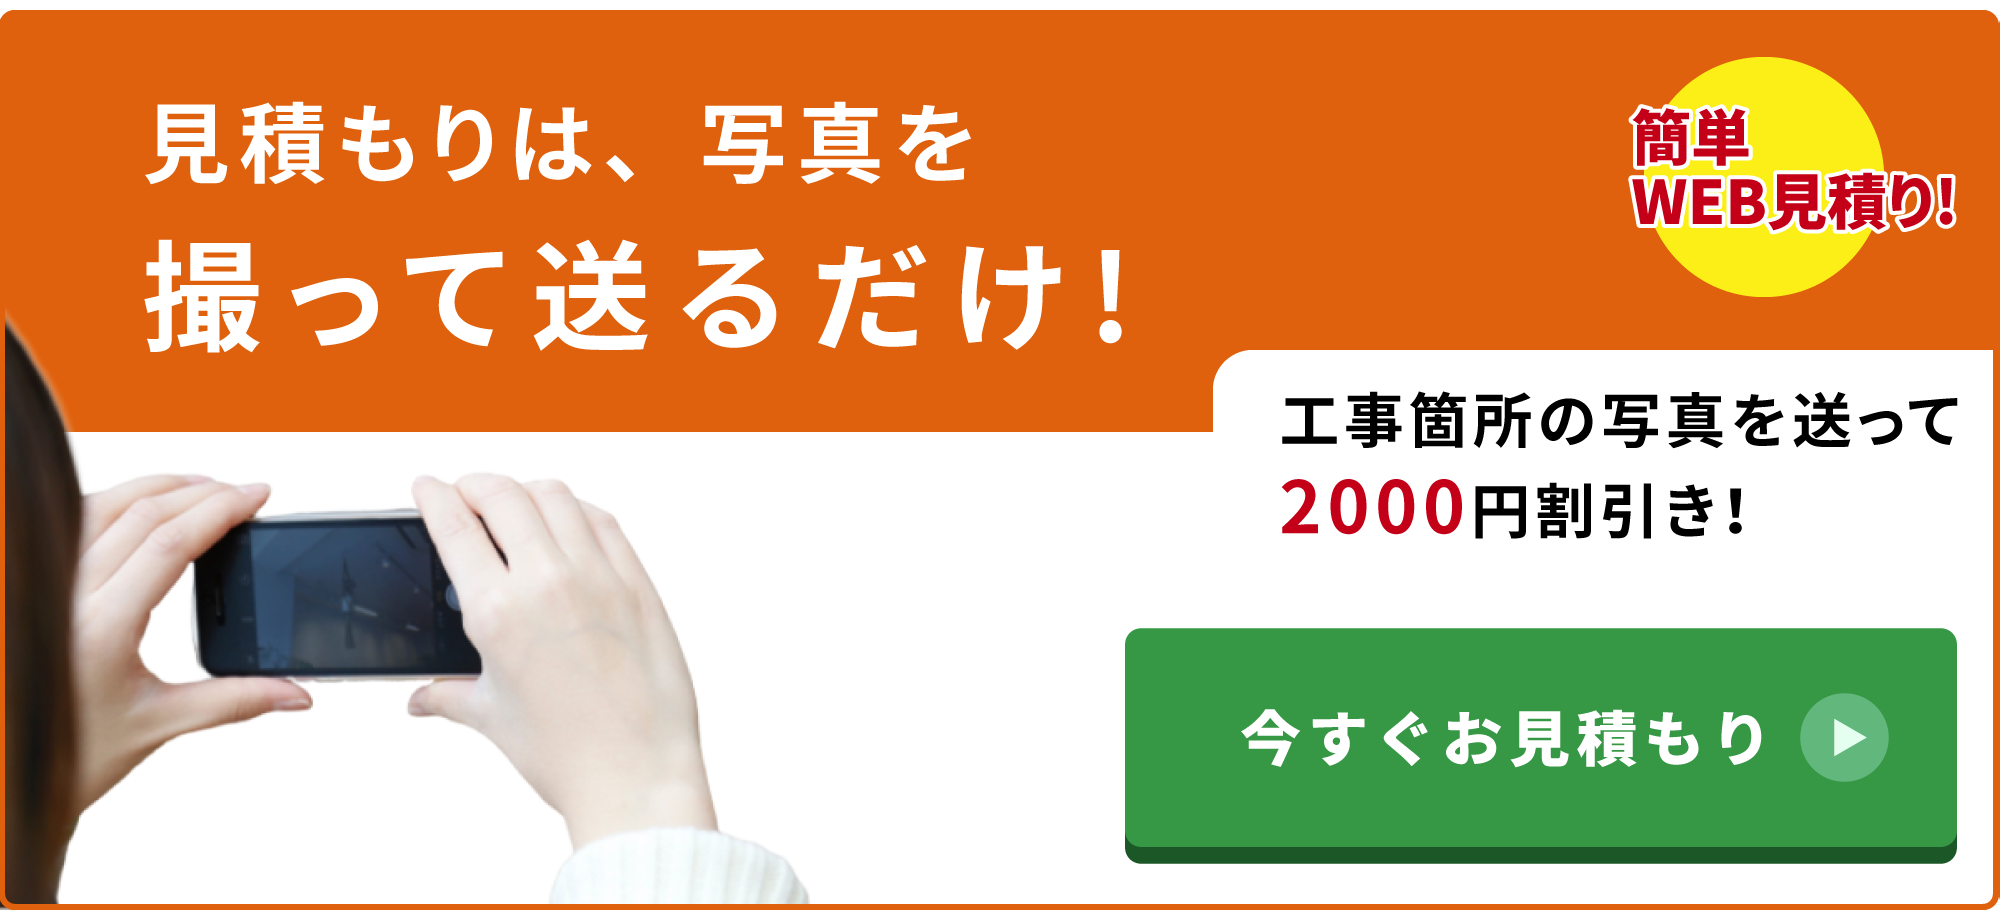 2000円割引バナー